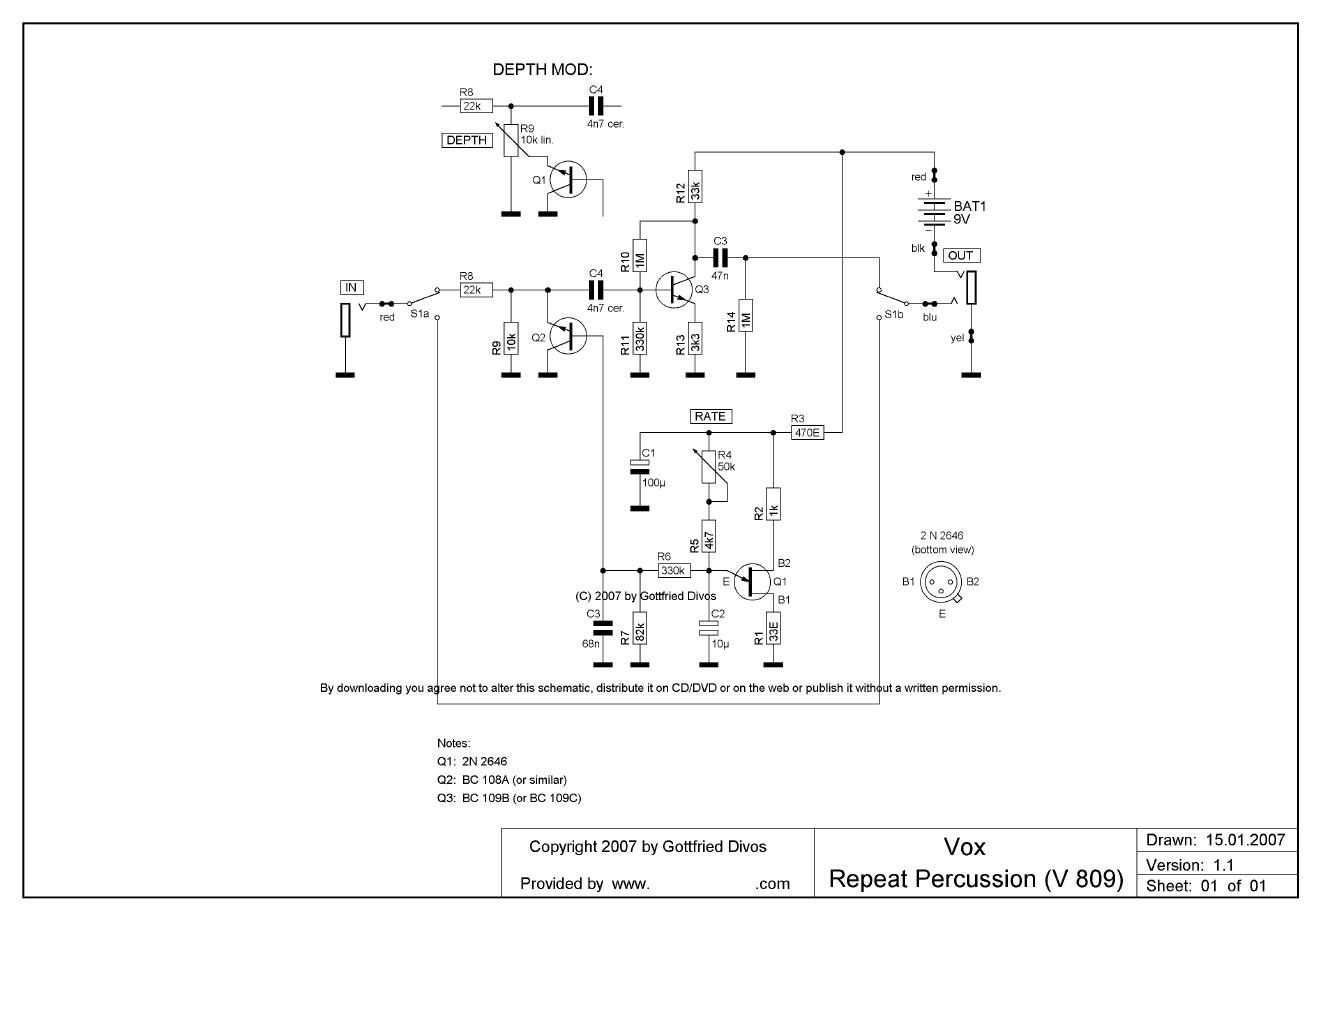 vox repeat percussion v809 schematic